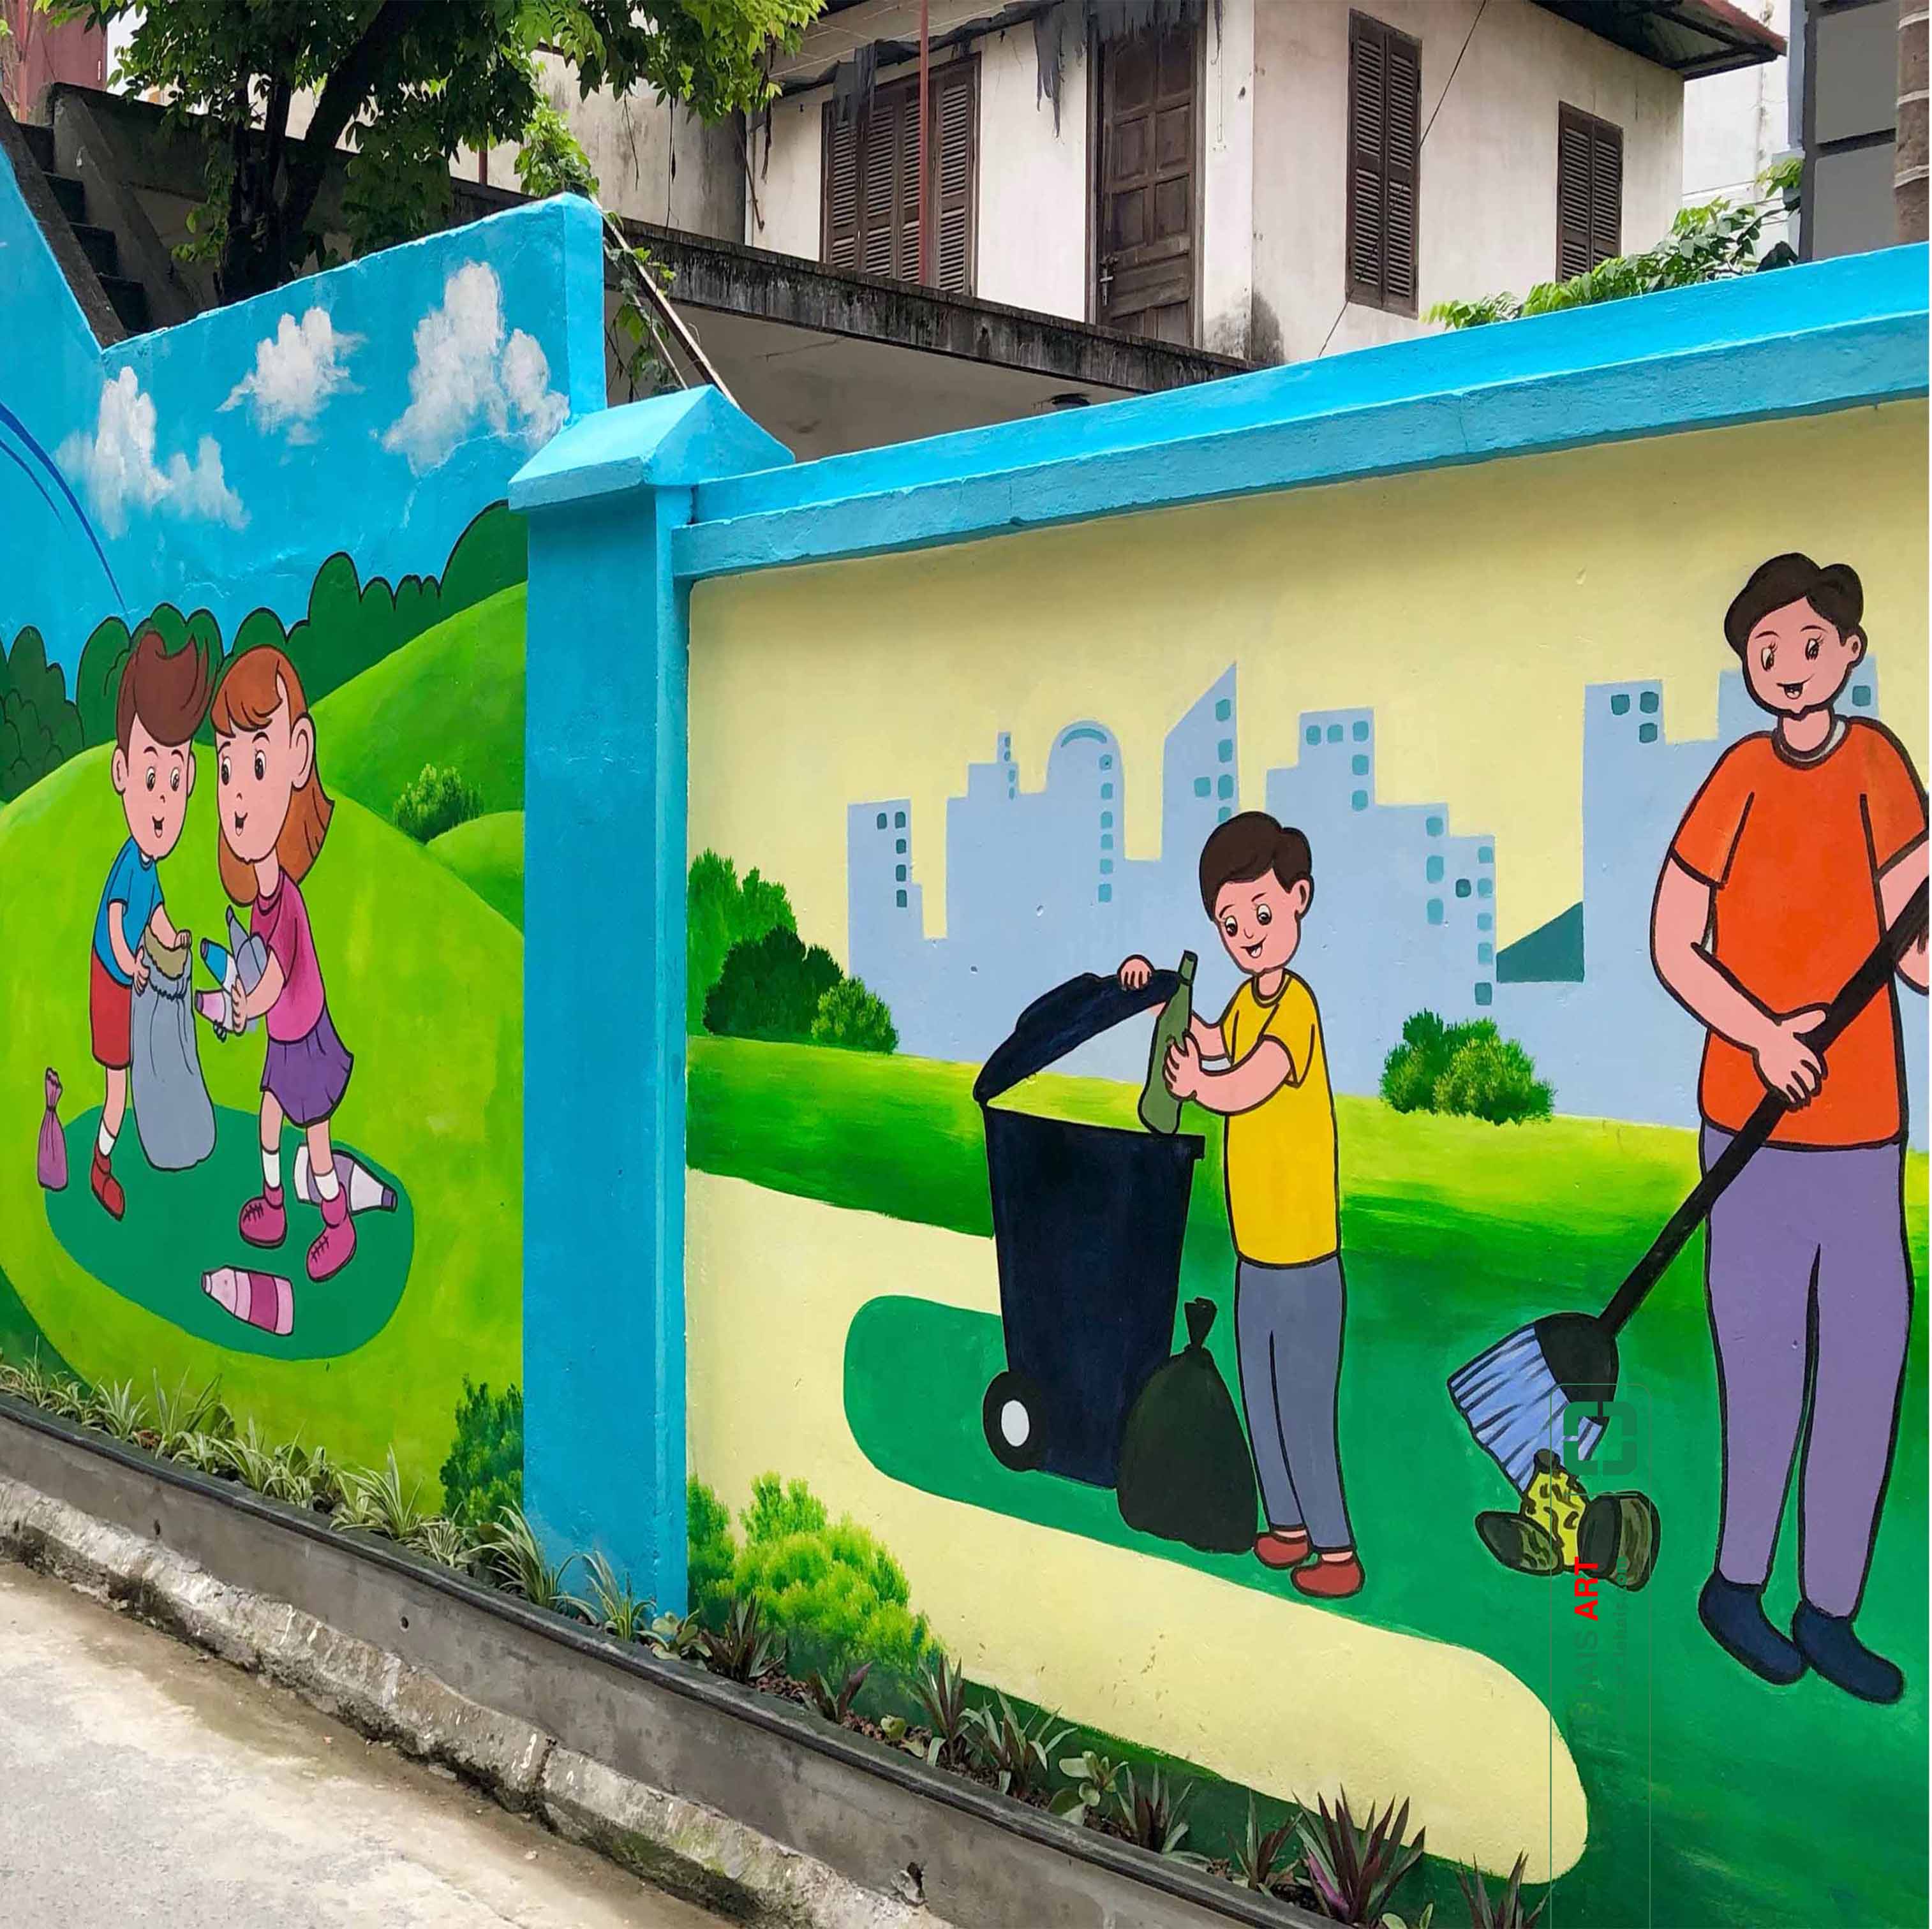 Vẽ tranh tường đường phố với nội dung tuyên truyền bảo vệ môi trường tại Ngô Gia Tự, Long Biên, Hà Nội - TT190LHAR